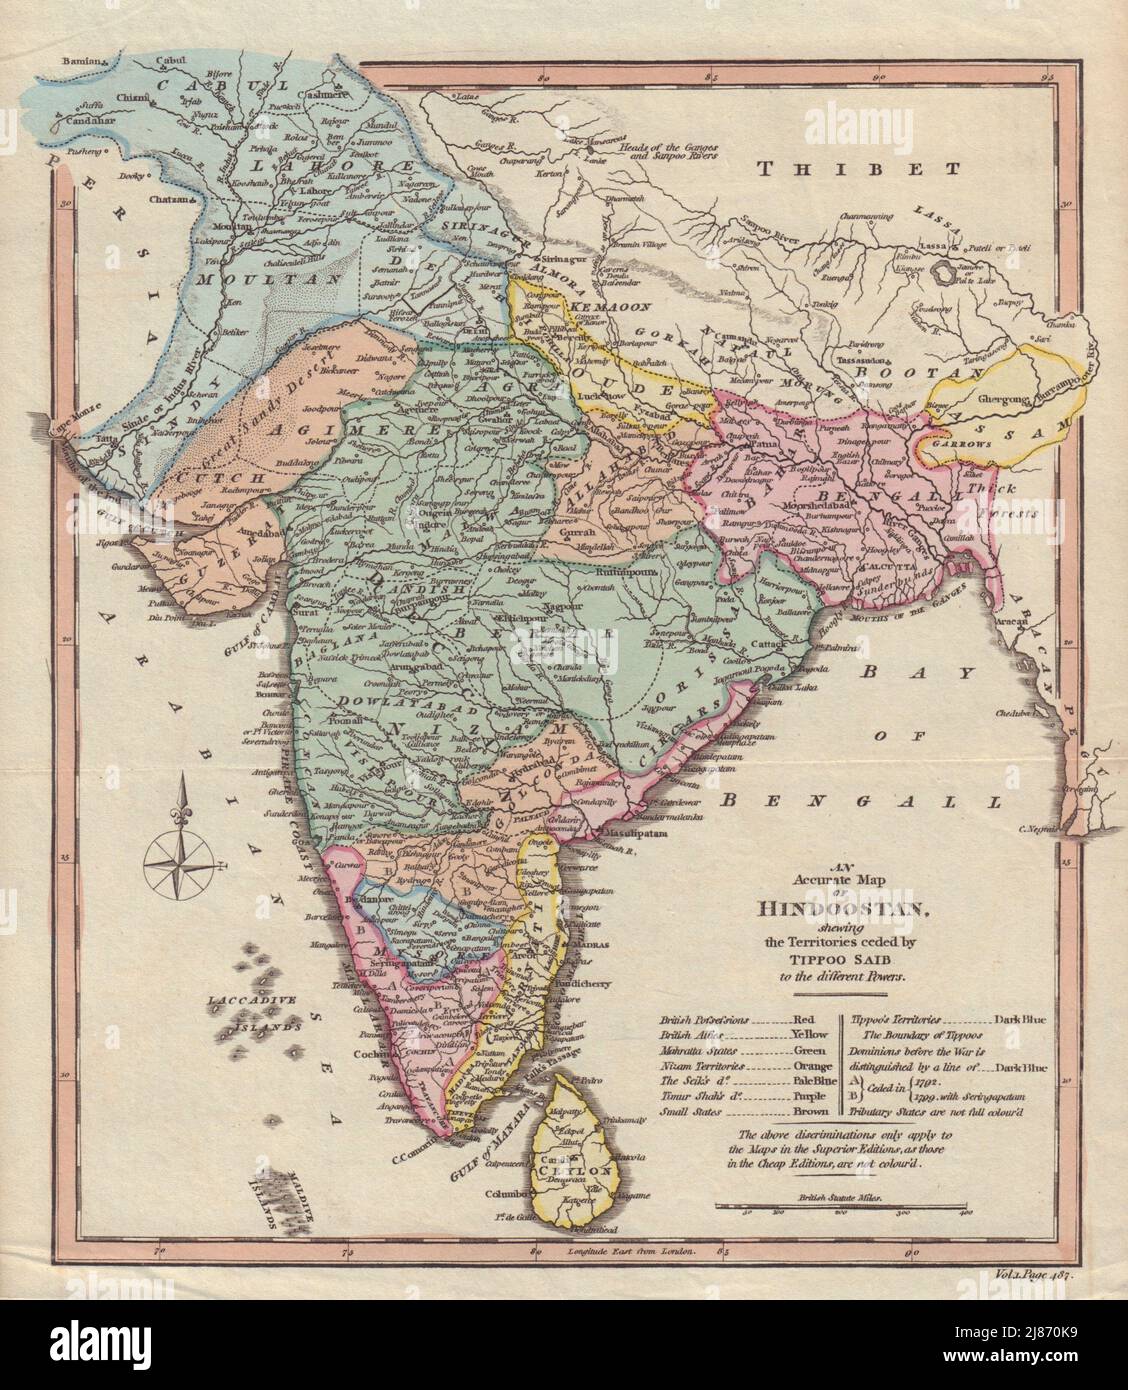 Hindoostan, der die von Tipoo Saib abgetretenen Gebiete aufführt. Indien. COOKE 1817-Karte Stockfoto